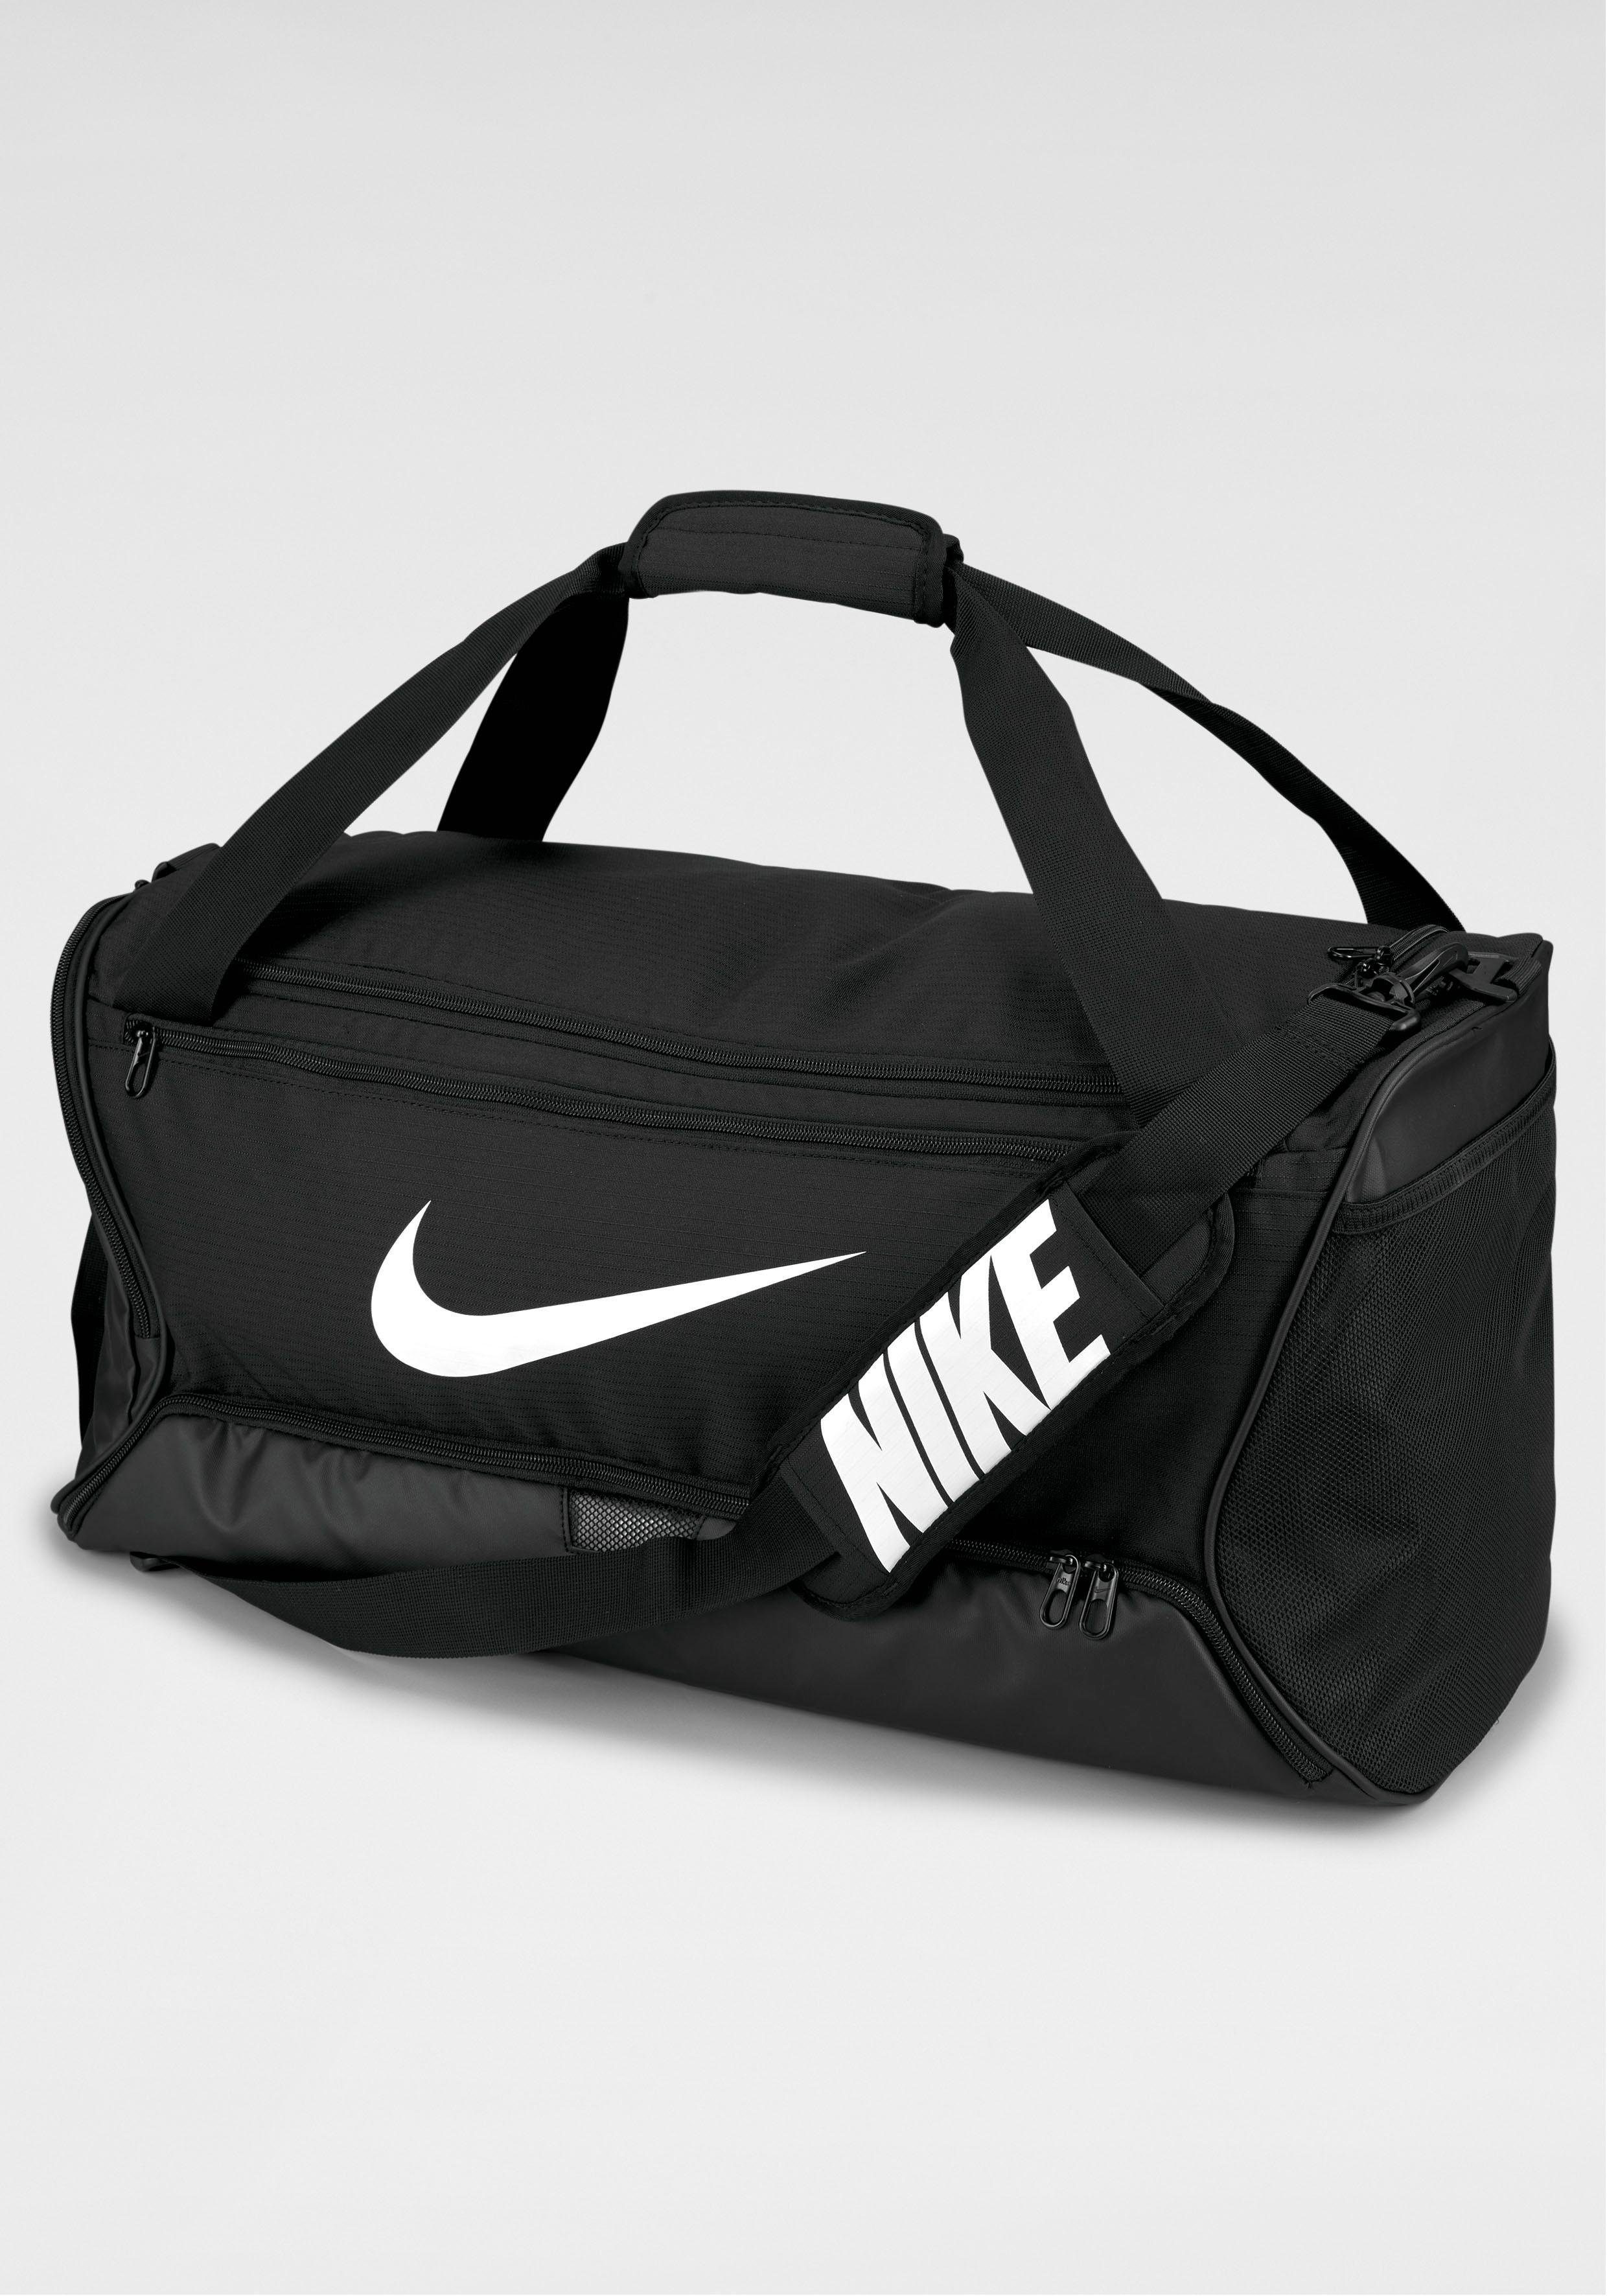 Nike Sporttasche Damen & Trainingstasche online kaufen | OTTO